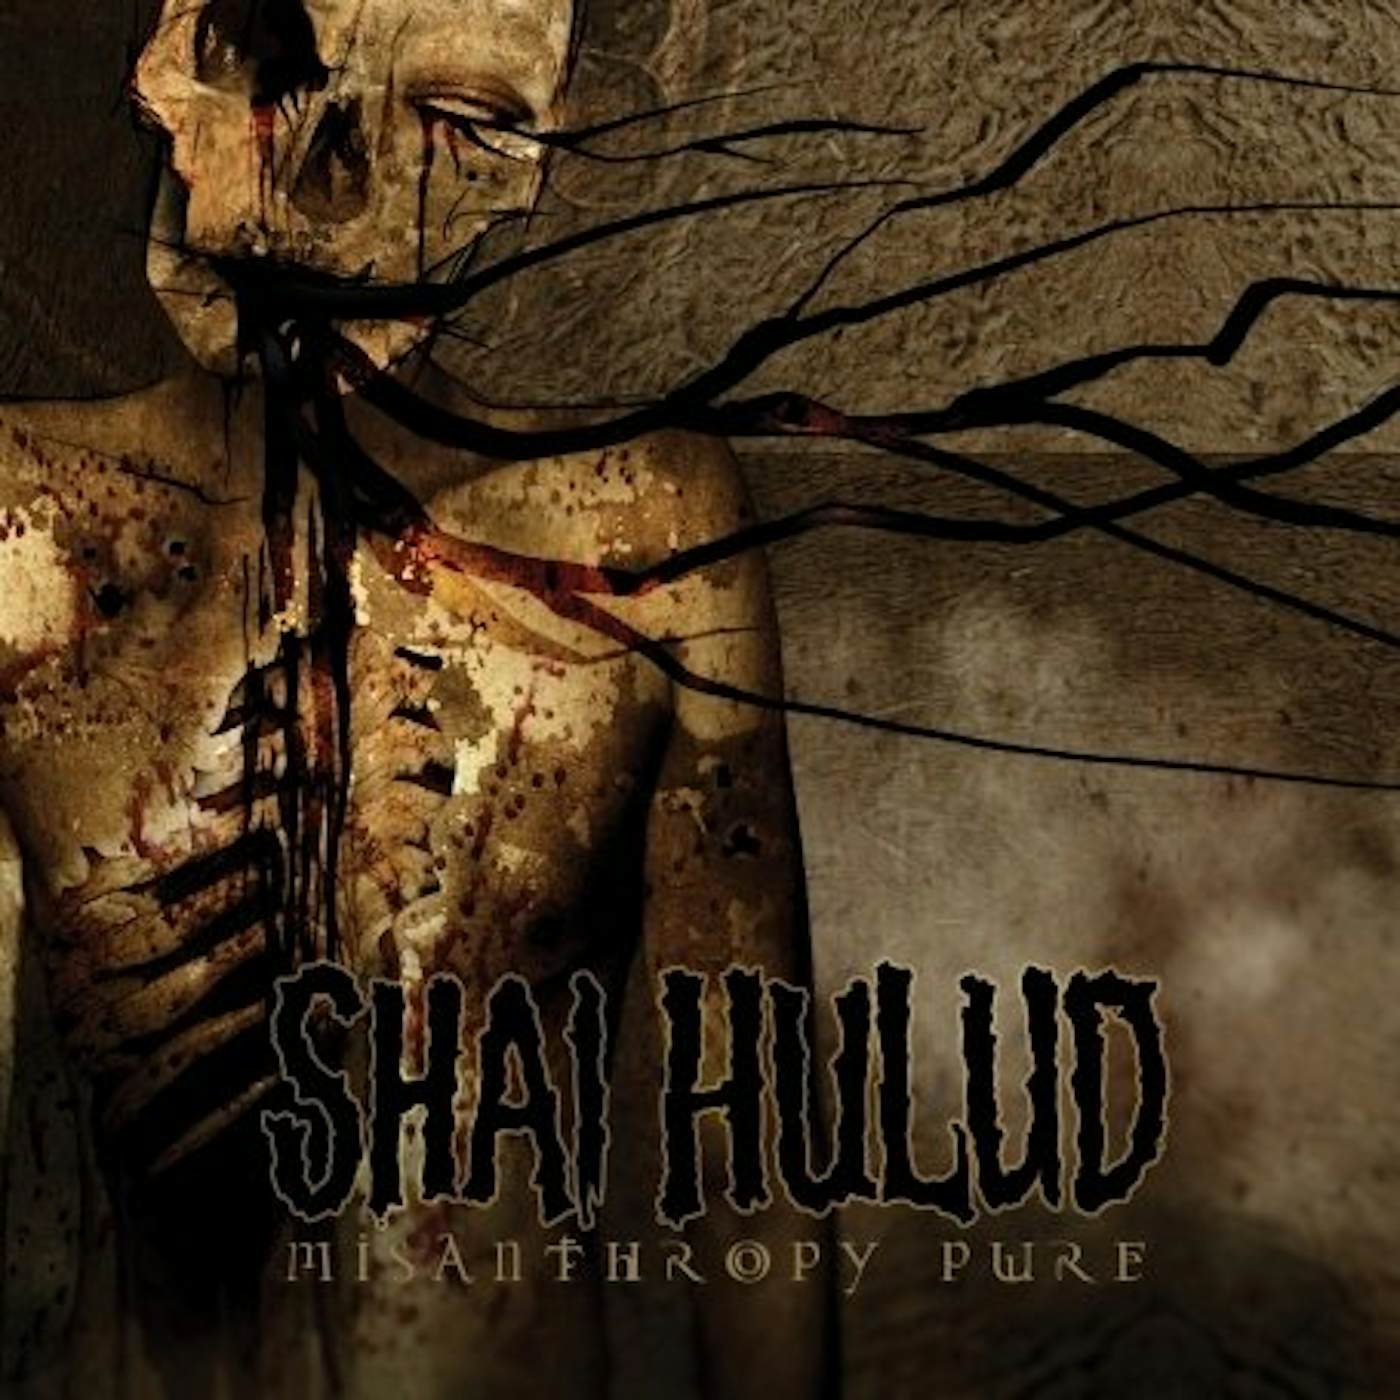 Shai Hulud MISANTHROPY PURE CD